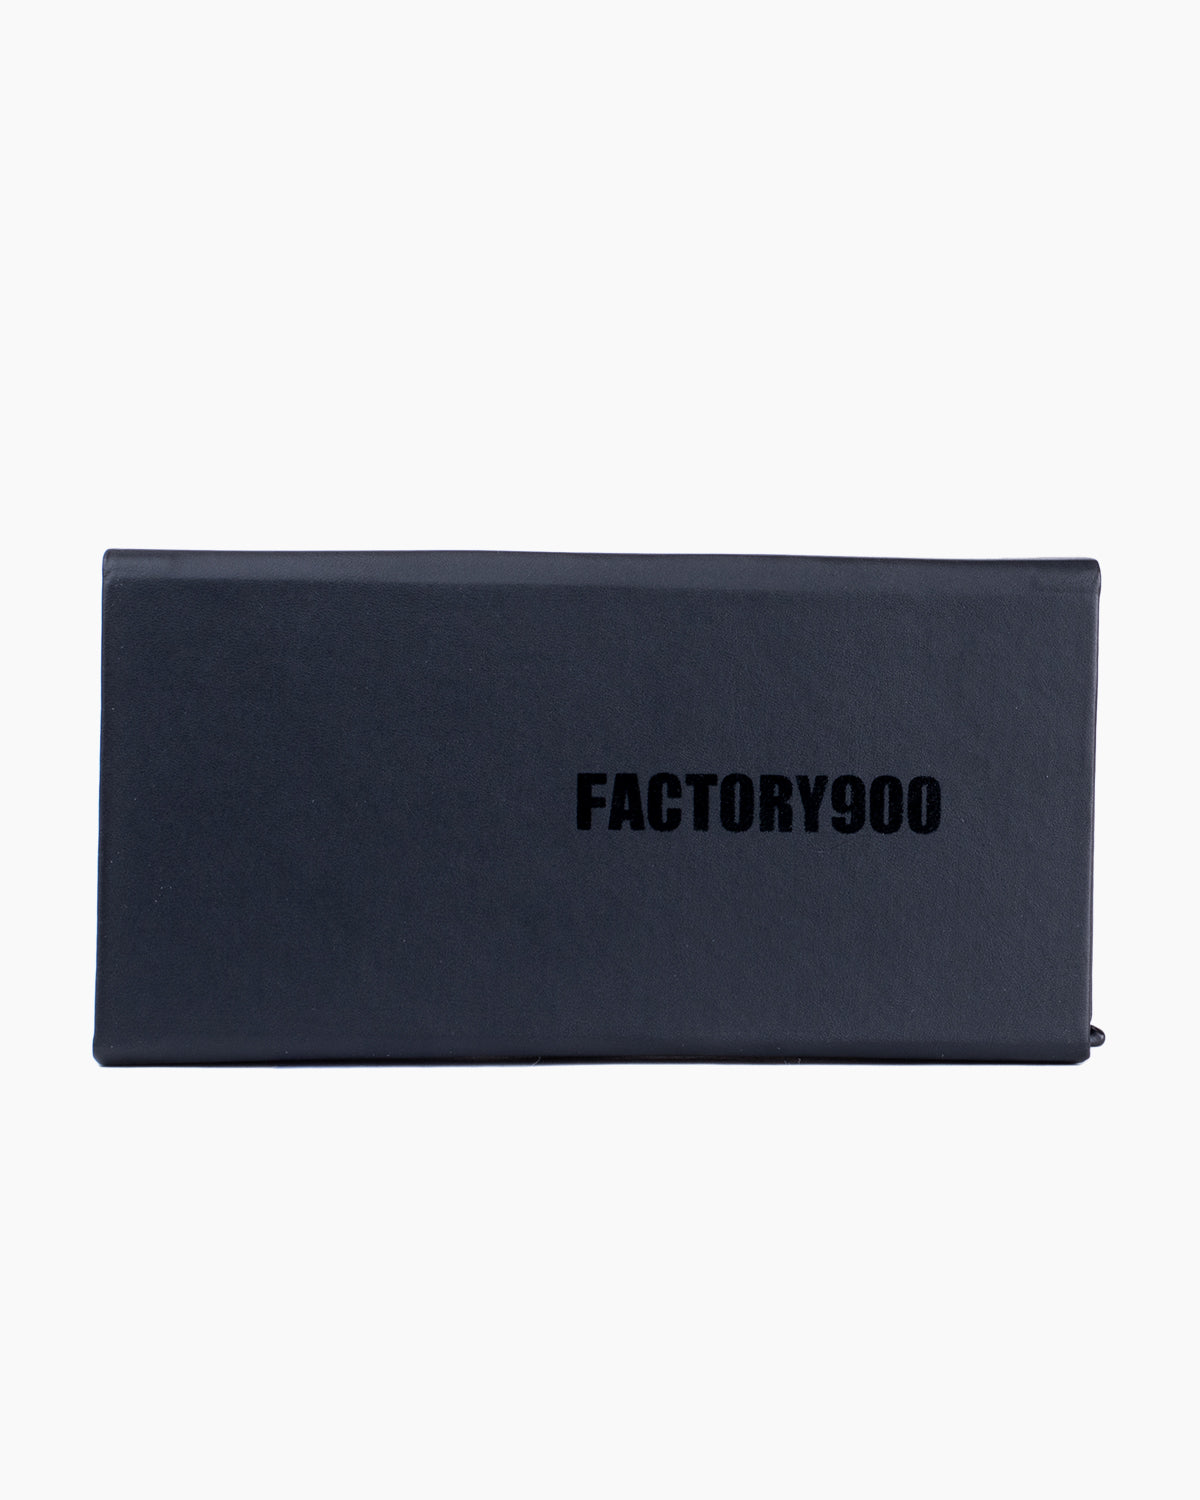 Factory 900 - RF140 - 001 | Bar à lunettes:  Marie-Sophie Dion